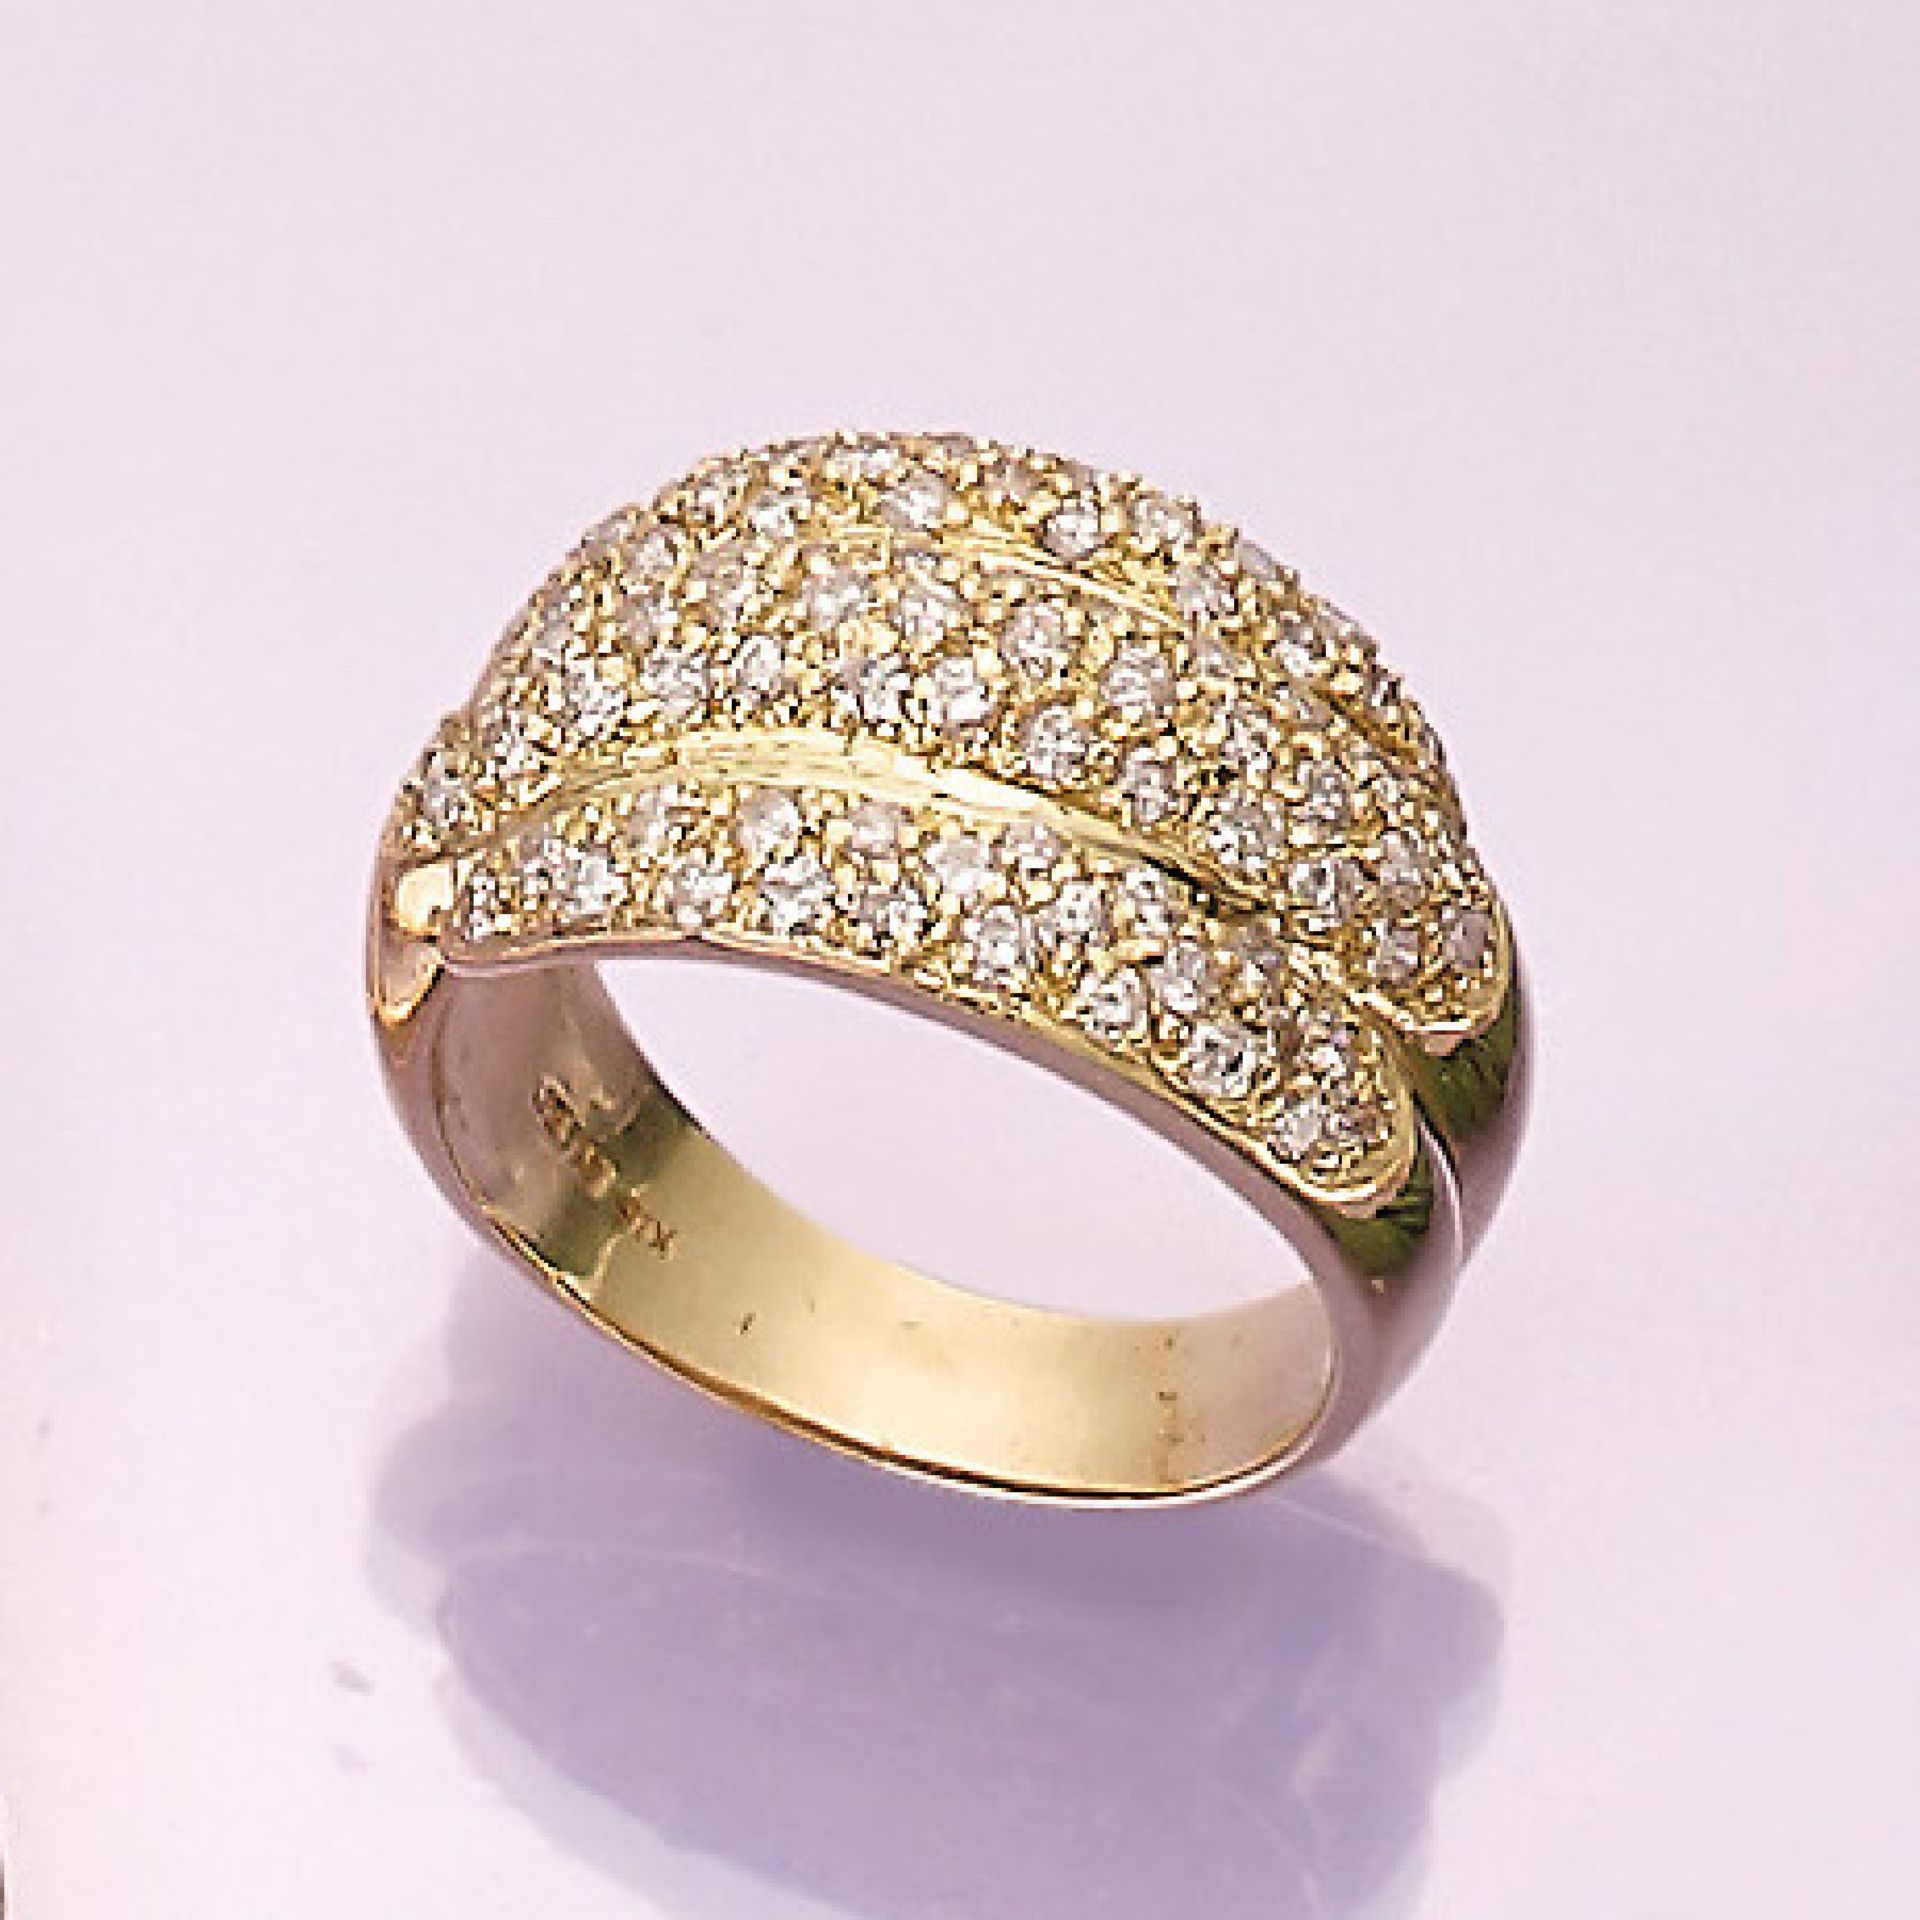 18 kt Gold Ring mit Brillanten, GG 750/000, 81 Brillanten zus. ca. 1.50 ct Weiß/p1-3, ca. 10.1 g, RW